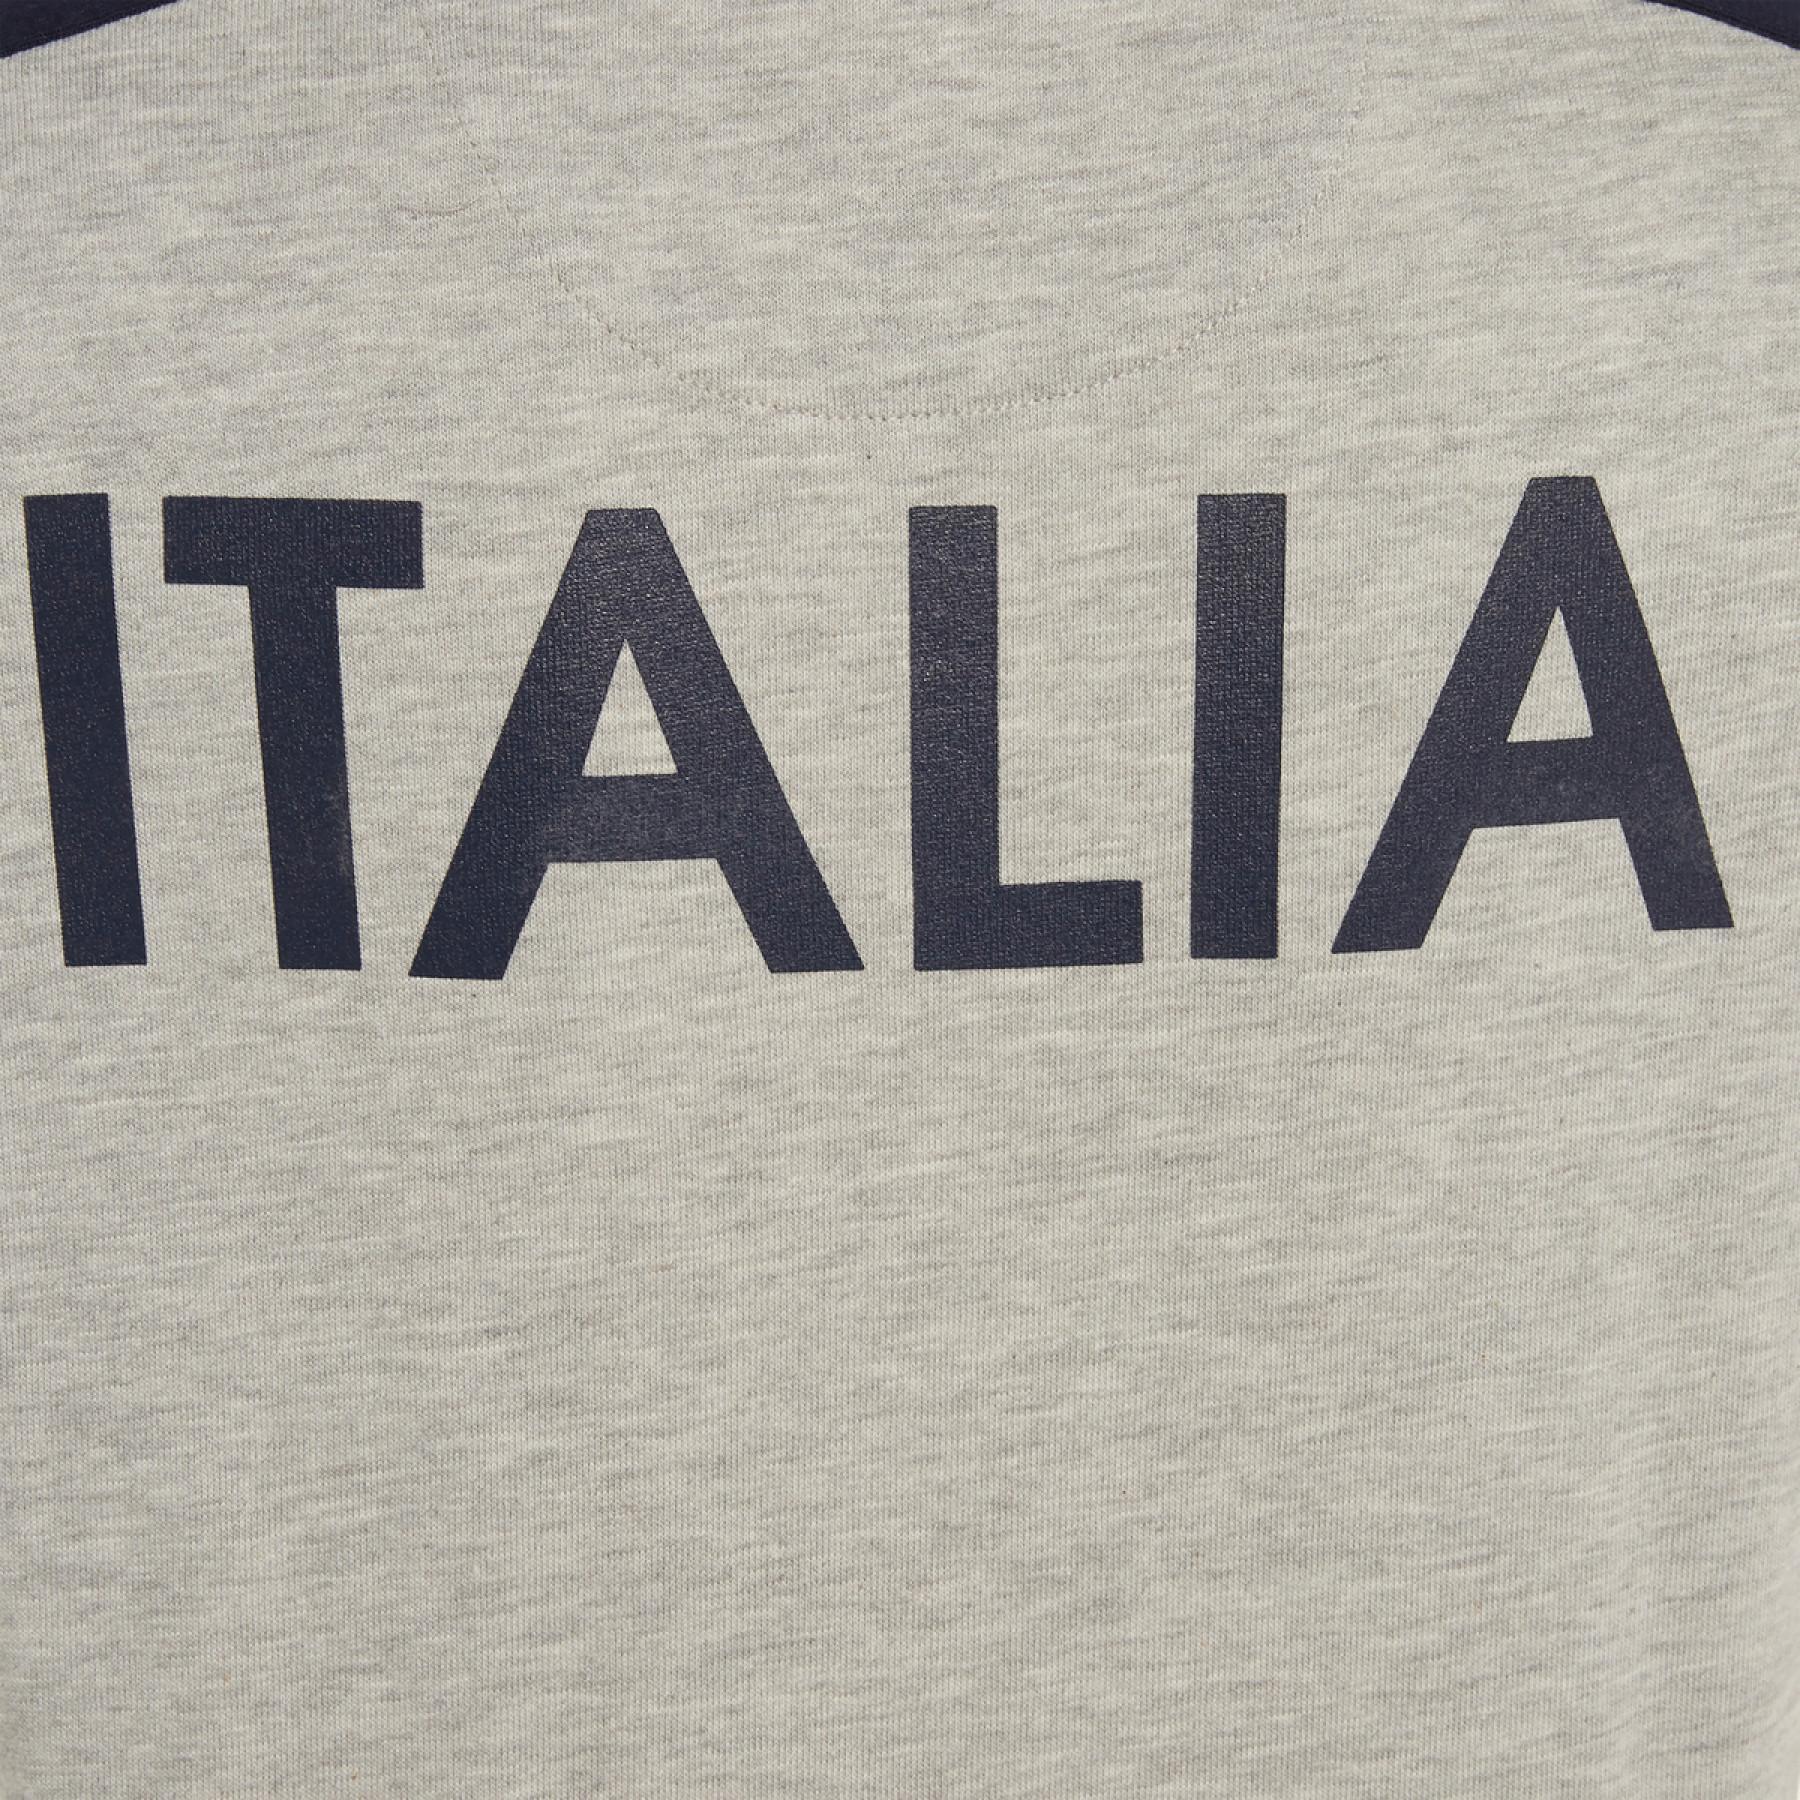 T-shirt i bomull för barn Italie rubgy 2019